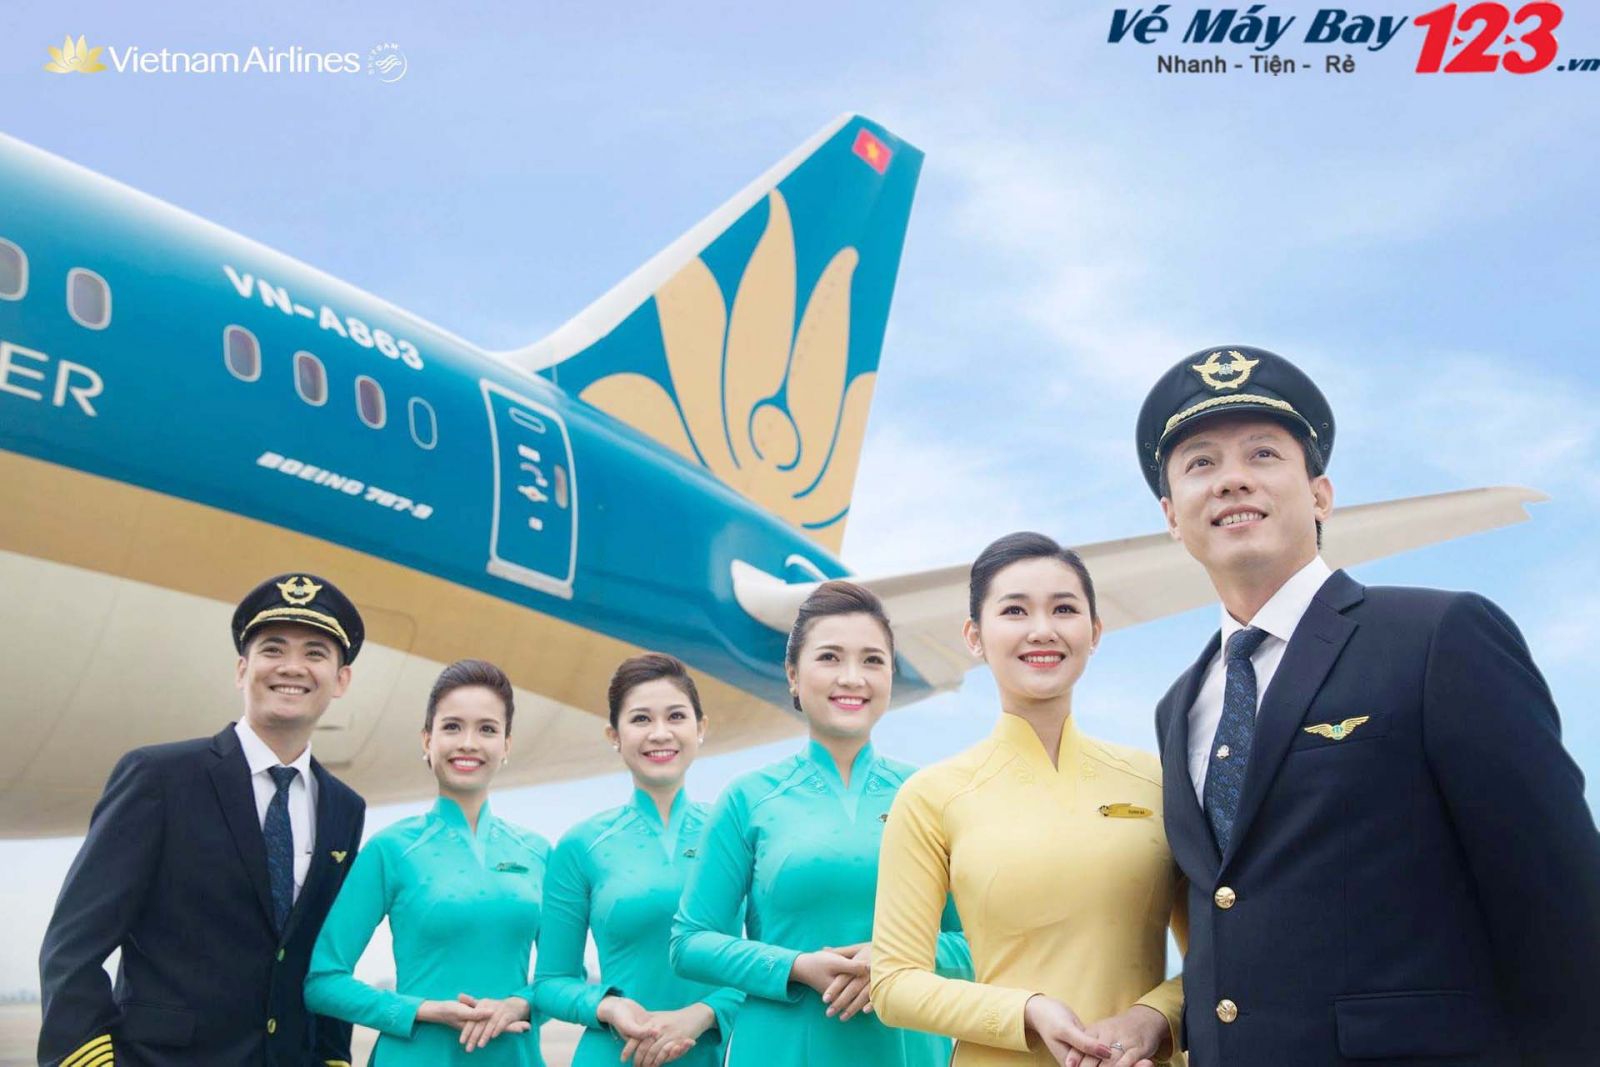 Vietnam Airlines – Hãng hàng không hàng đầu Việt Nam